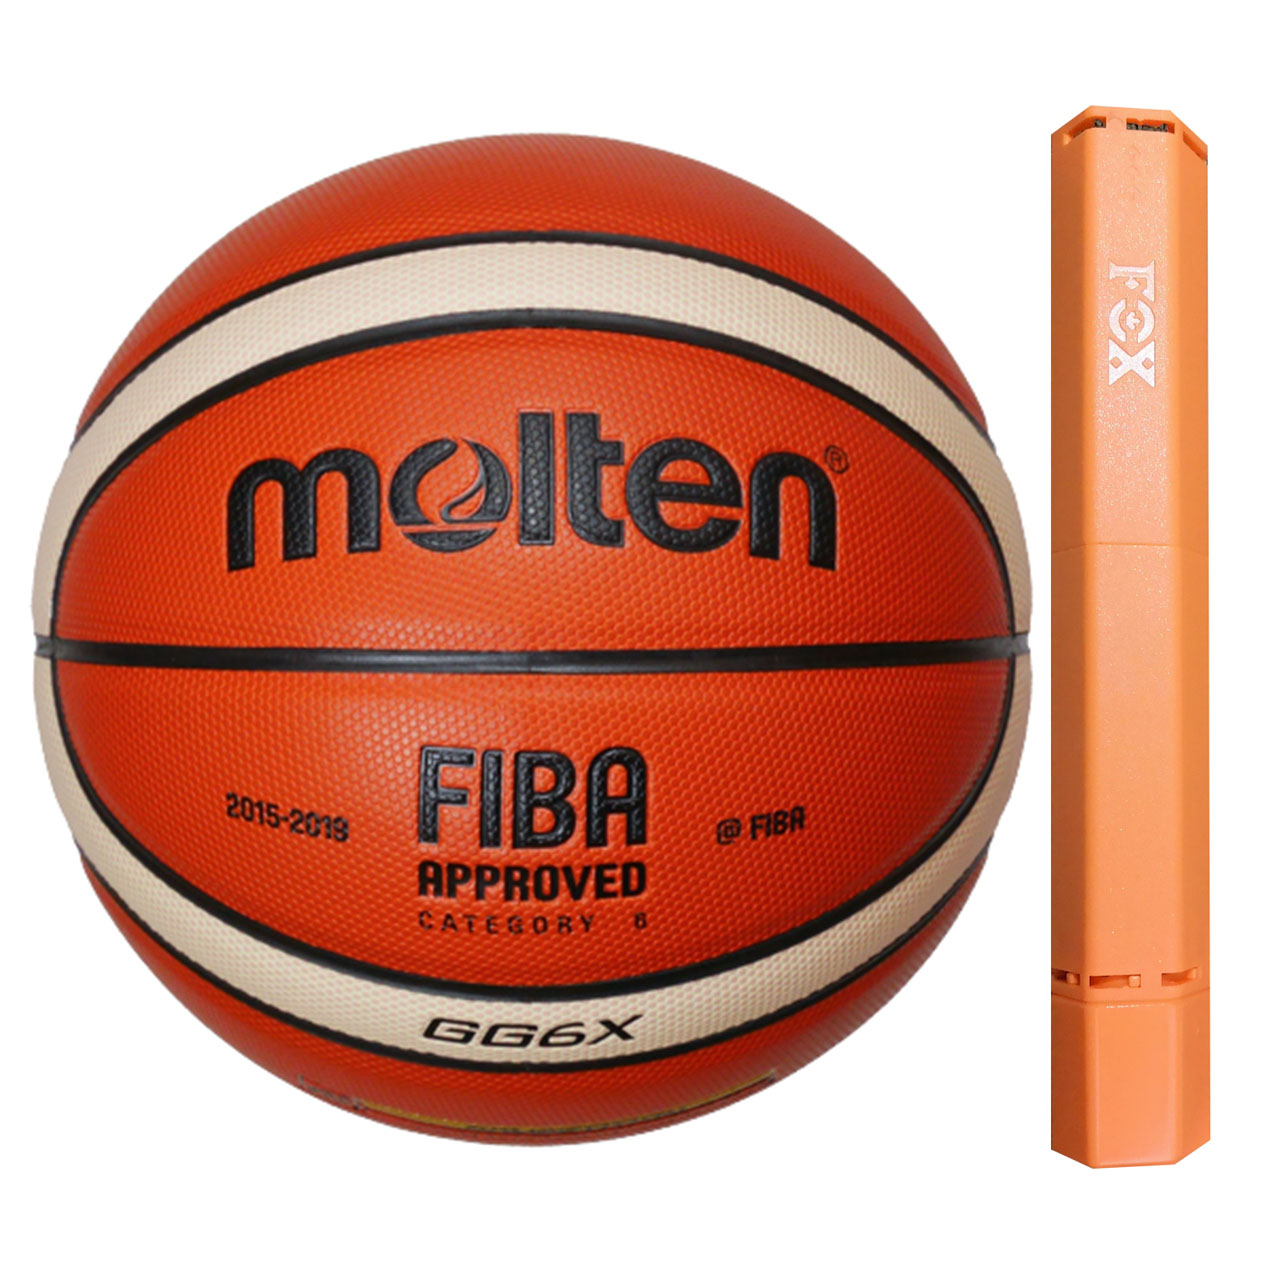 توپ بسکتبال مولتن مدل GG6X به همراه تلمبه فاکس سایز 6